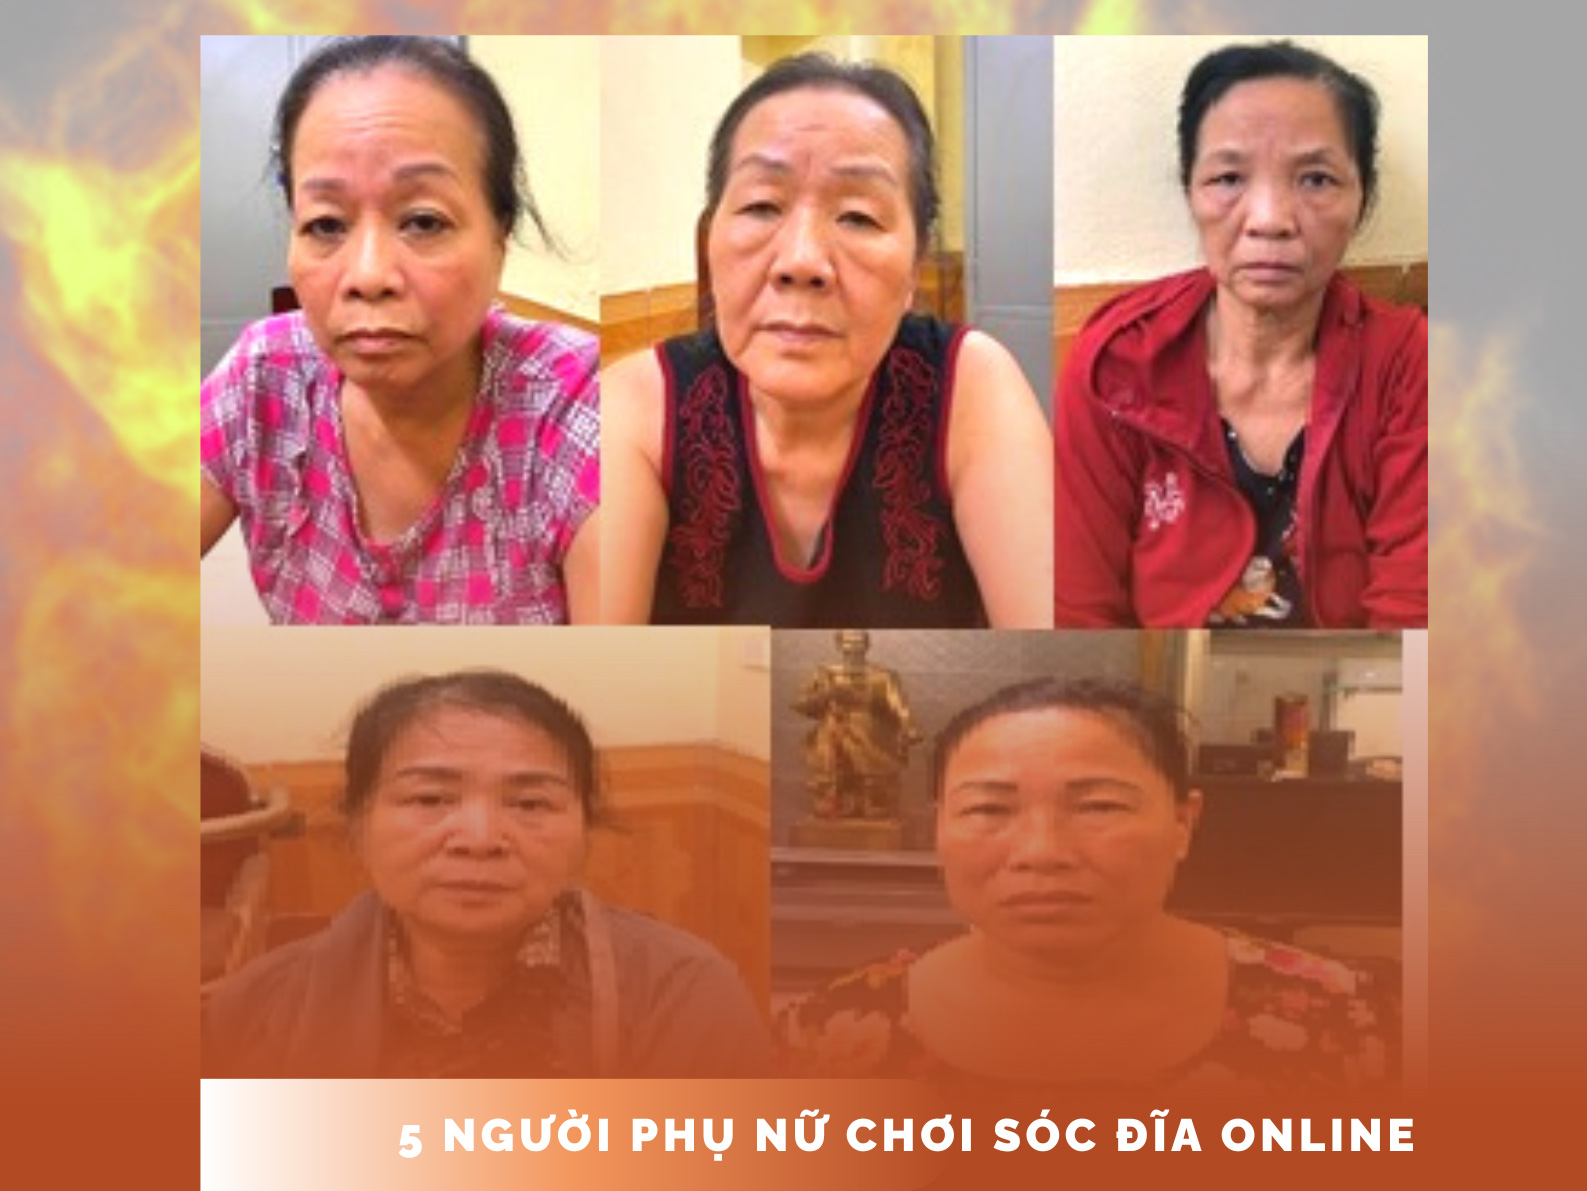 5 phụ nữ ở Hà Nội bị bắt khi chơi xóc đĩa online - ảnh 1